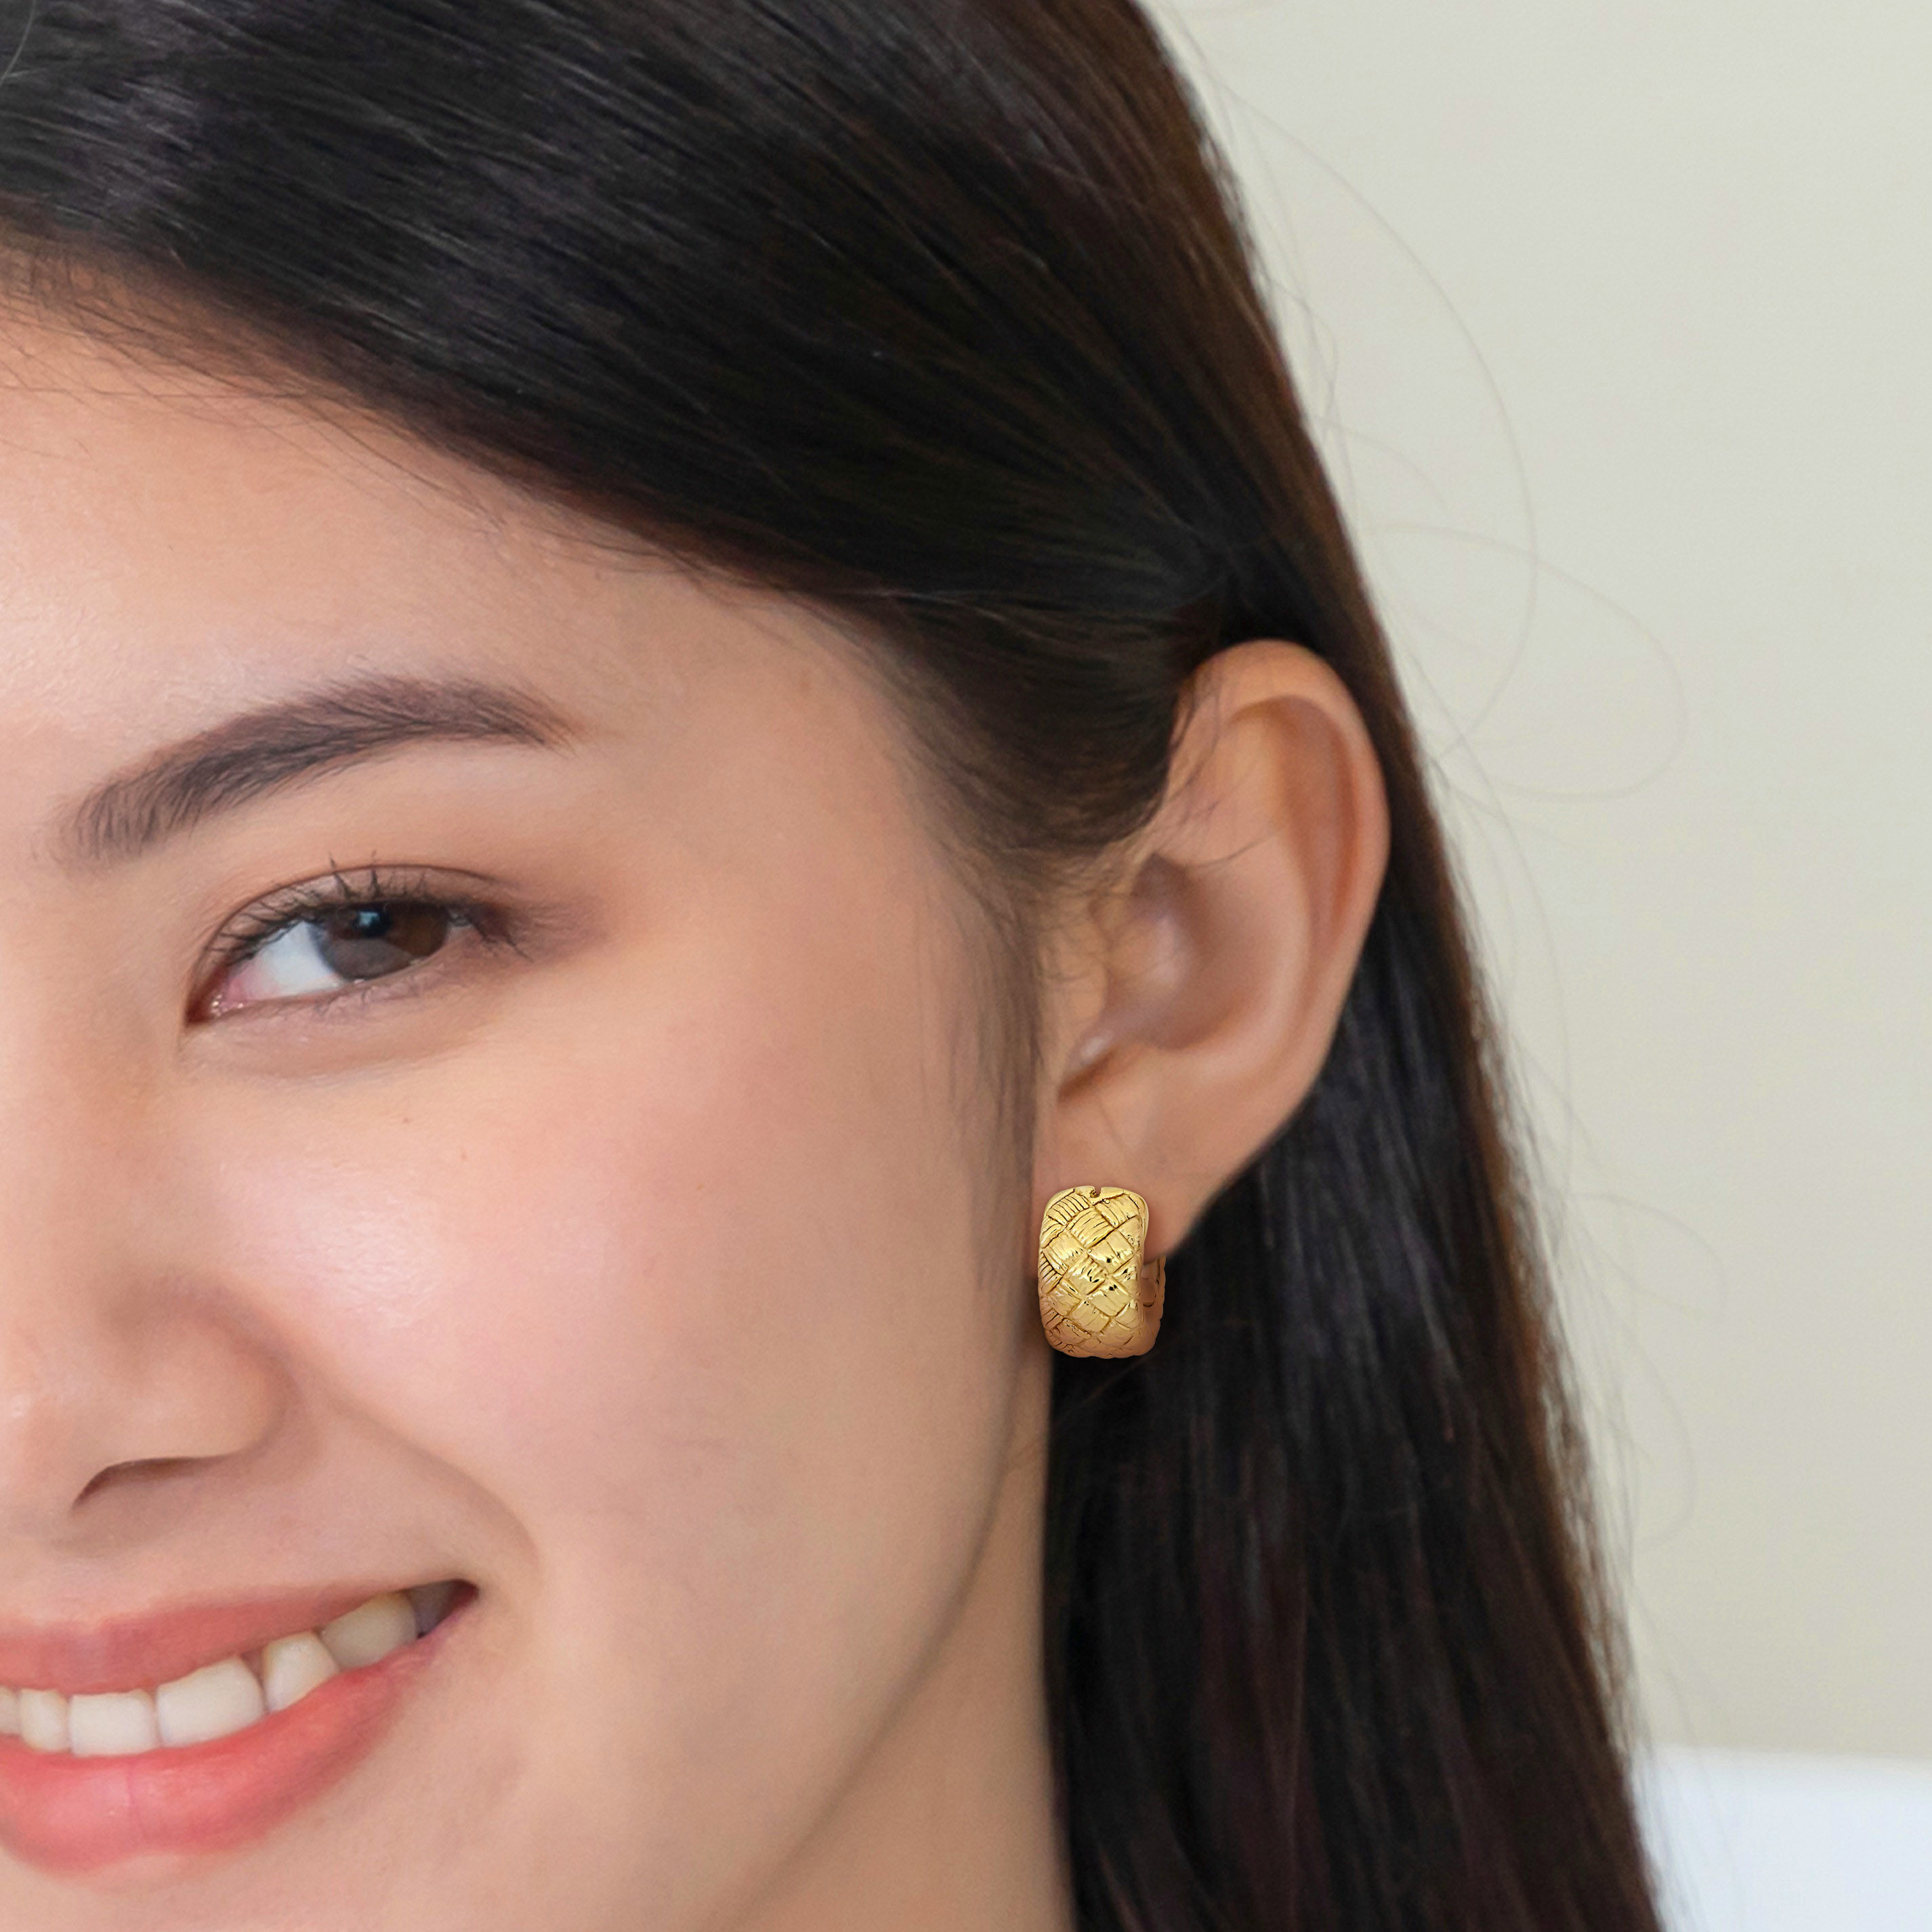 21 MM Lattice-Style Hoop Earrings in 14k Yellow Gold